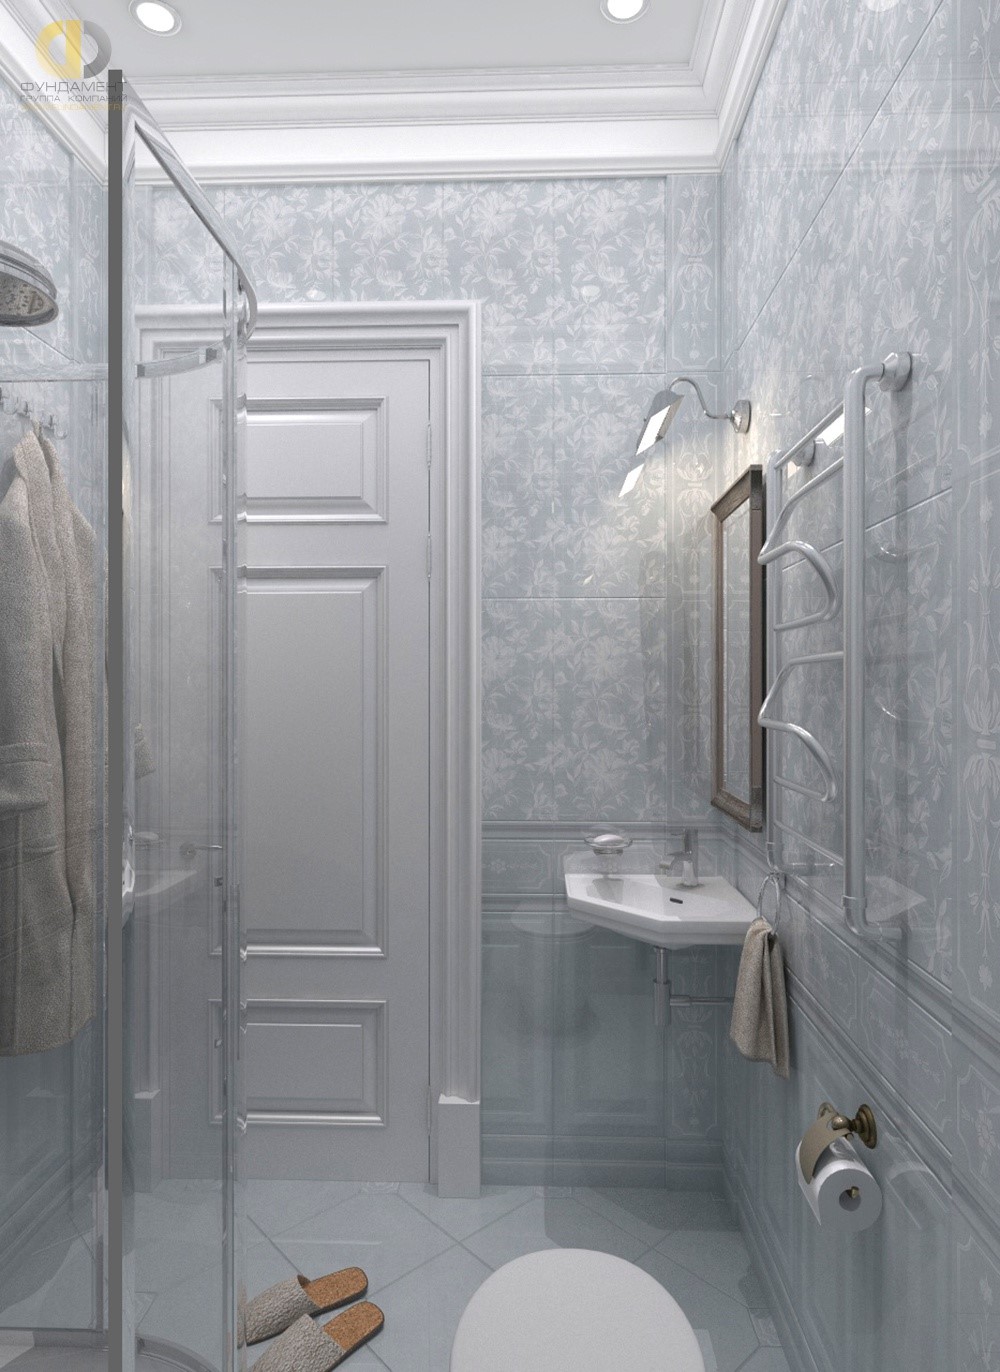 Интерьер ванной комнаты в ЖК «Английский Квартал» с компактной зоной умывания